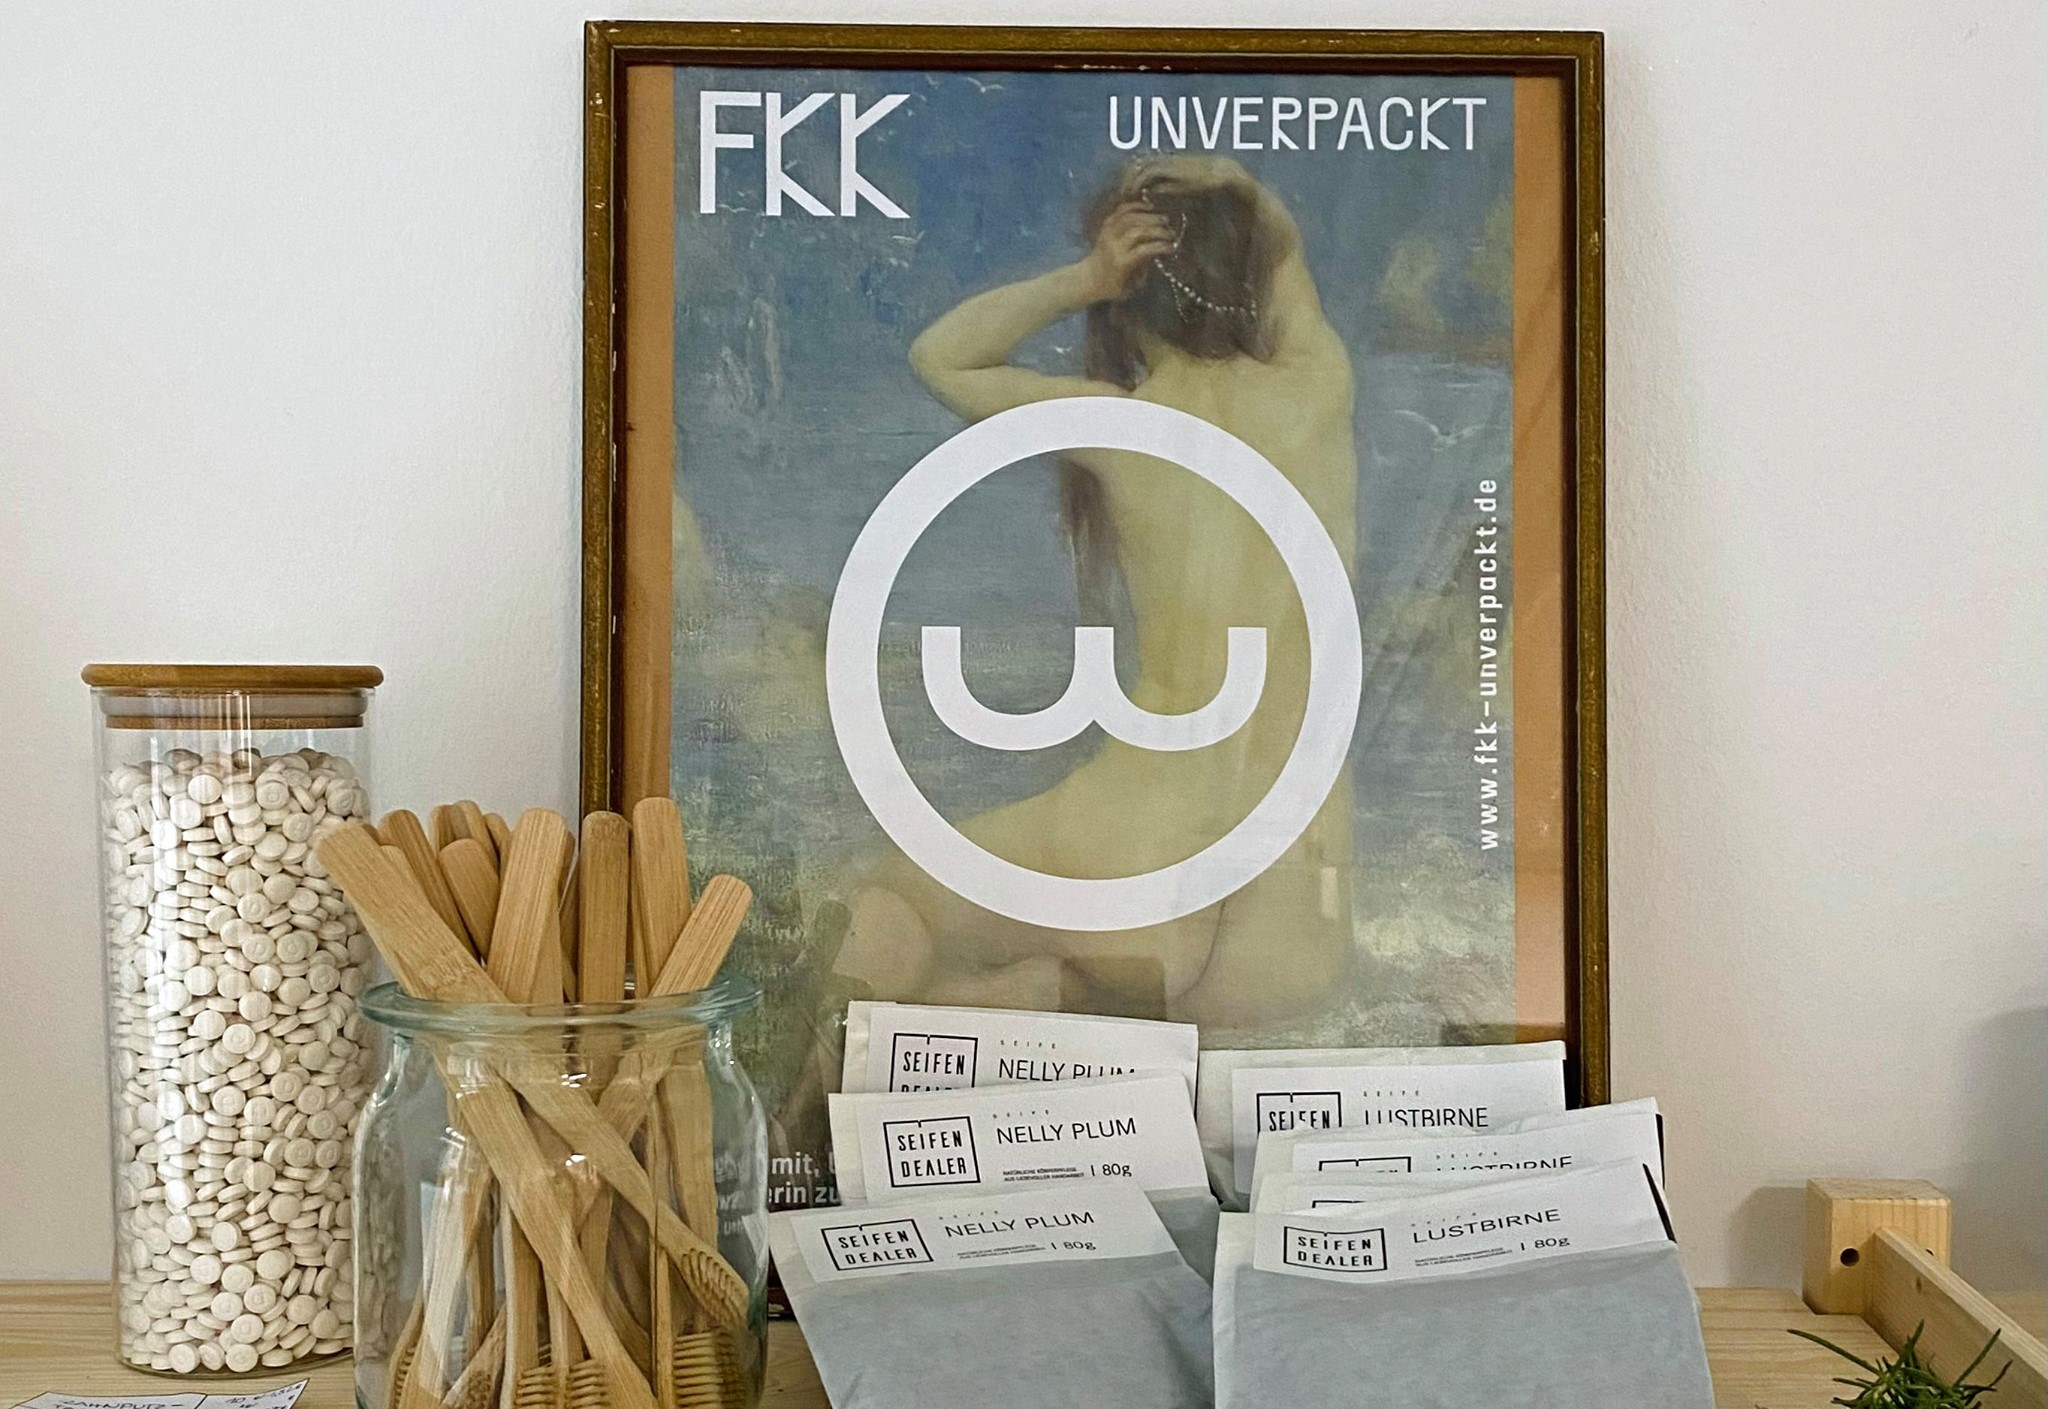 Schwerin: FKK mitten in der Stadt – Unverpackt einkaufen bei Geneviève und Susanne